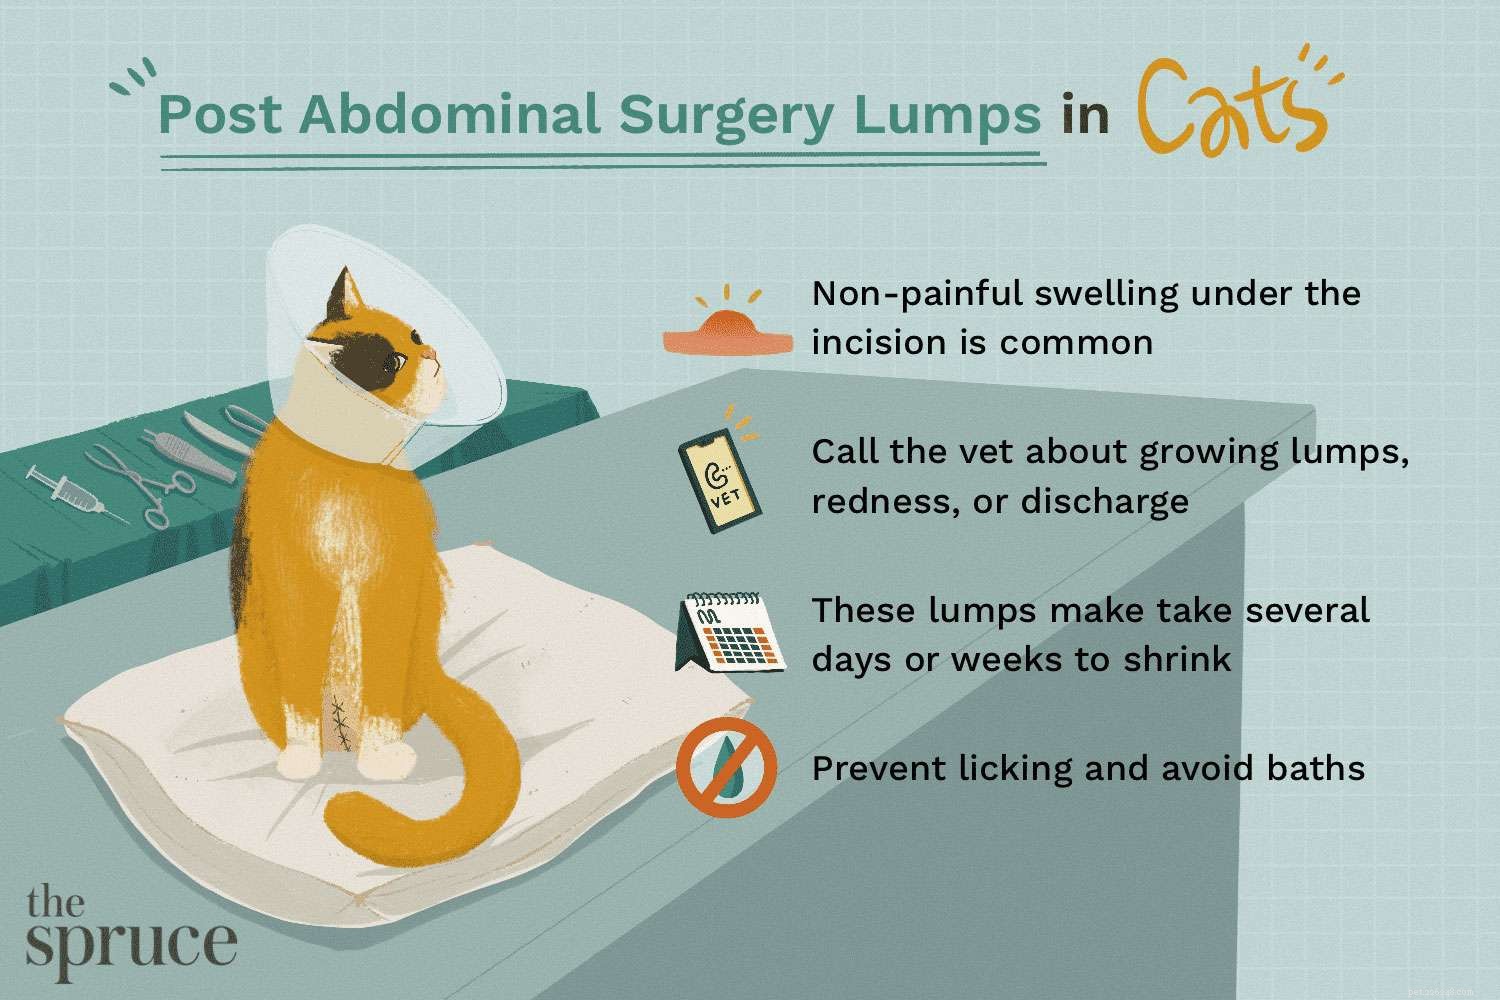 Является ли опухоль на животе нормальной у кошек после операции по удалению яичников?